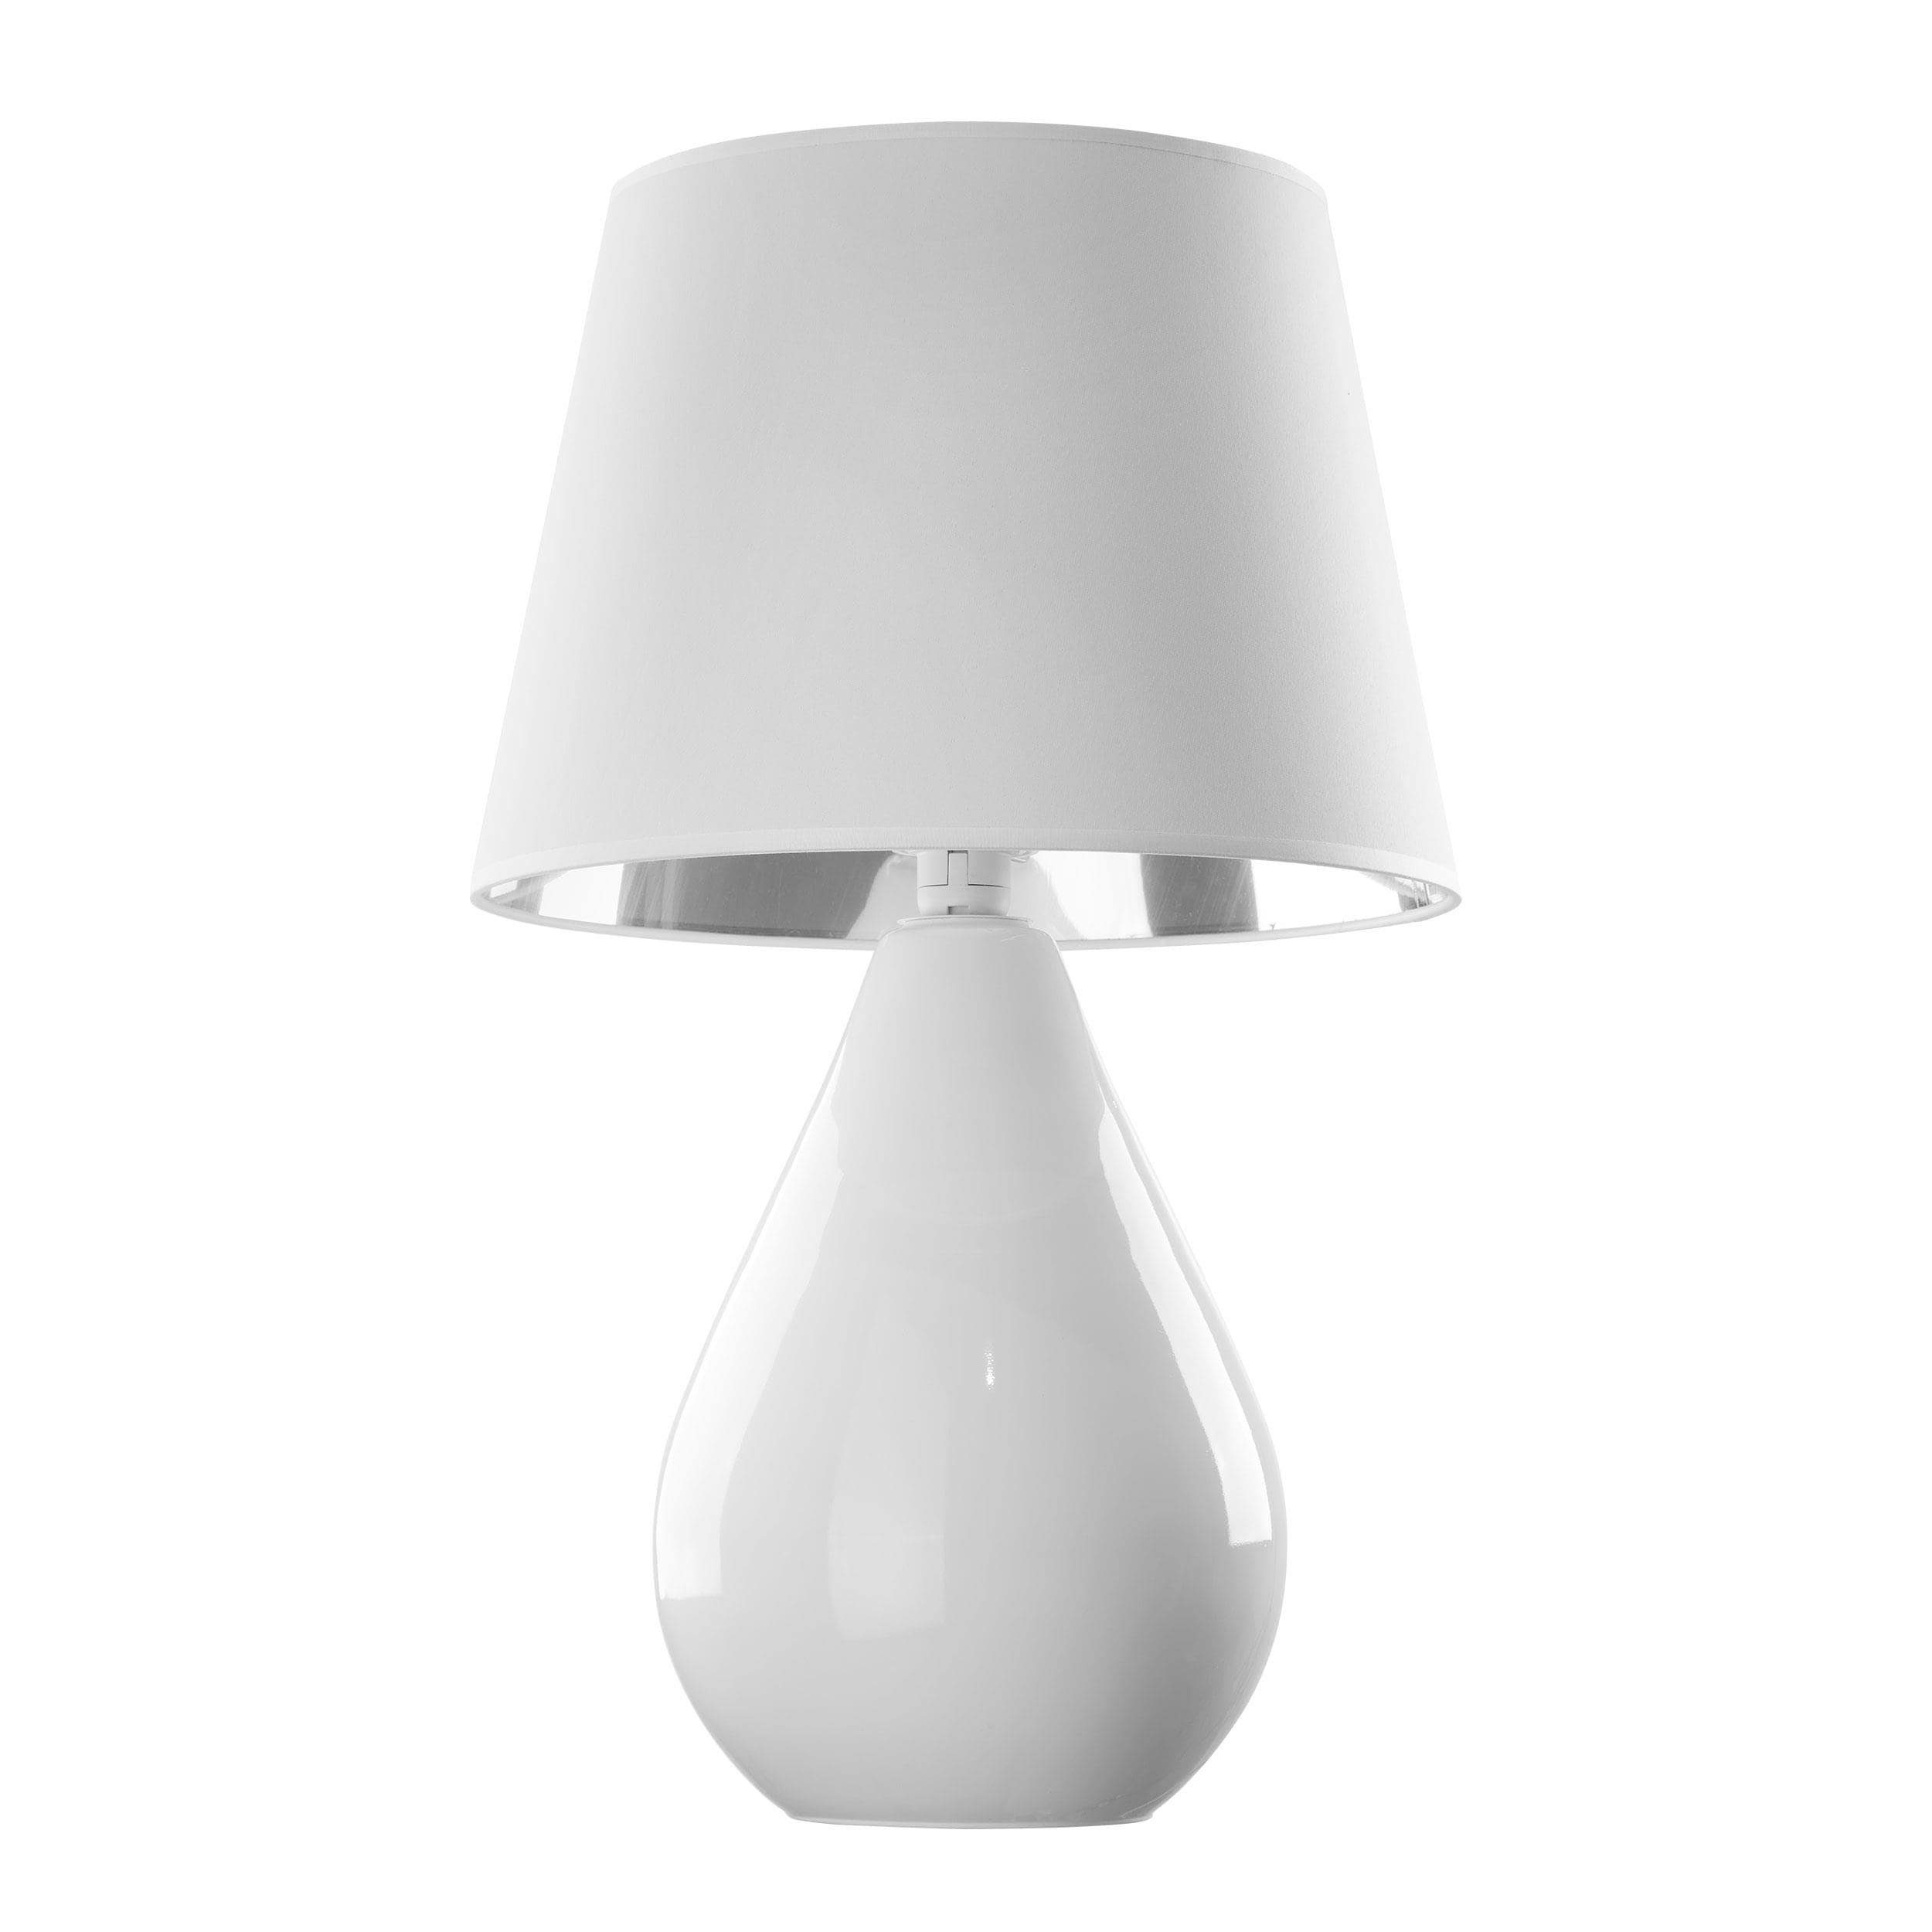 Signature Home Collection Nachttischlampe Tischlampe aus Glas Tropfenform mit Schirm Glaslampe, ohne Leuchtmittel, warmweiß, als Nachttischlampe einsetzbar